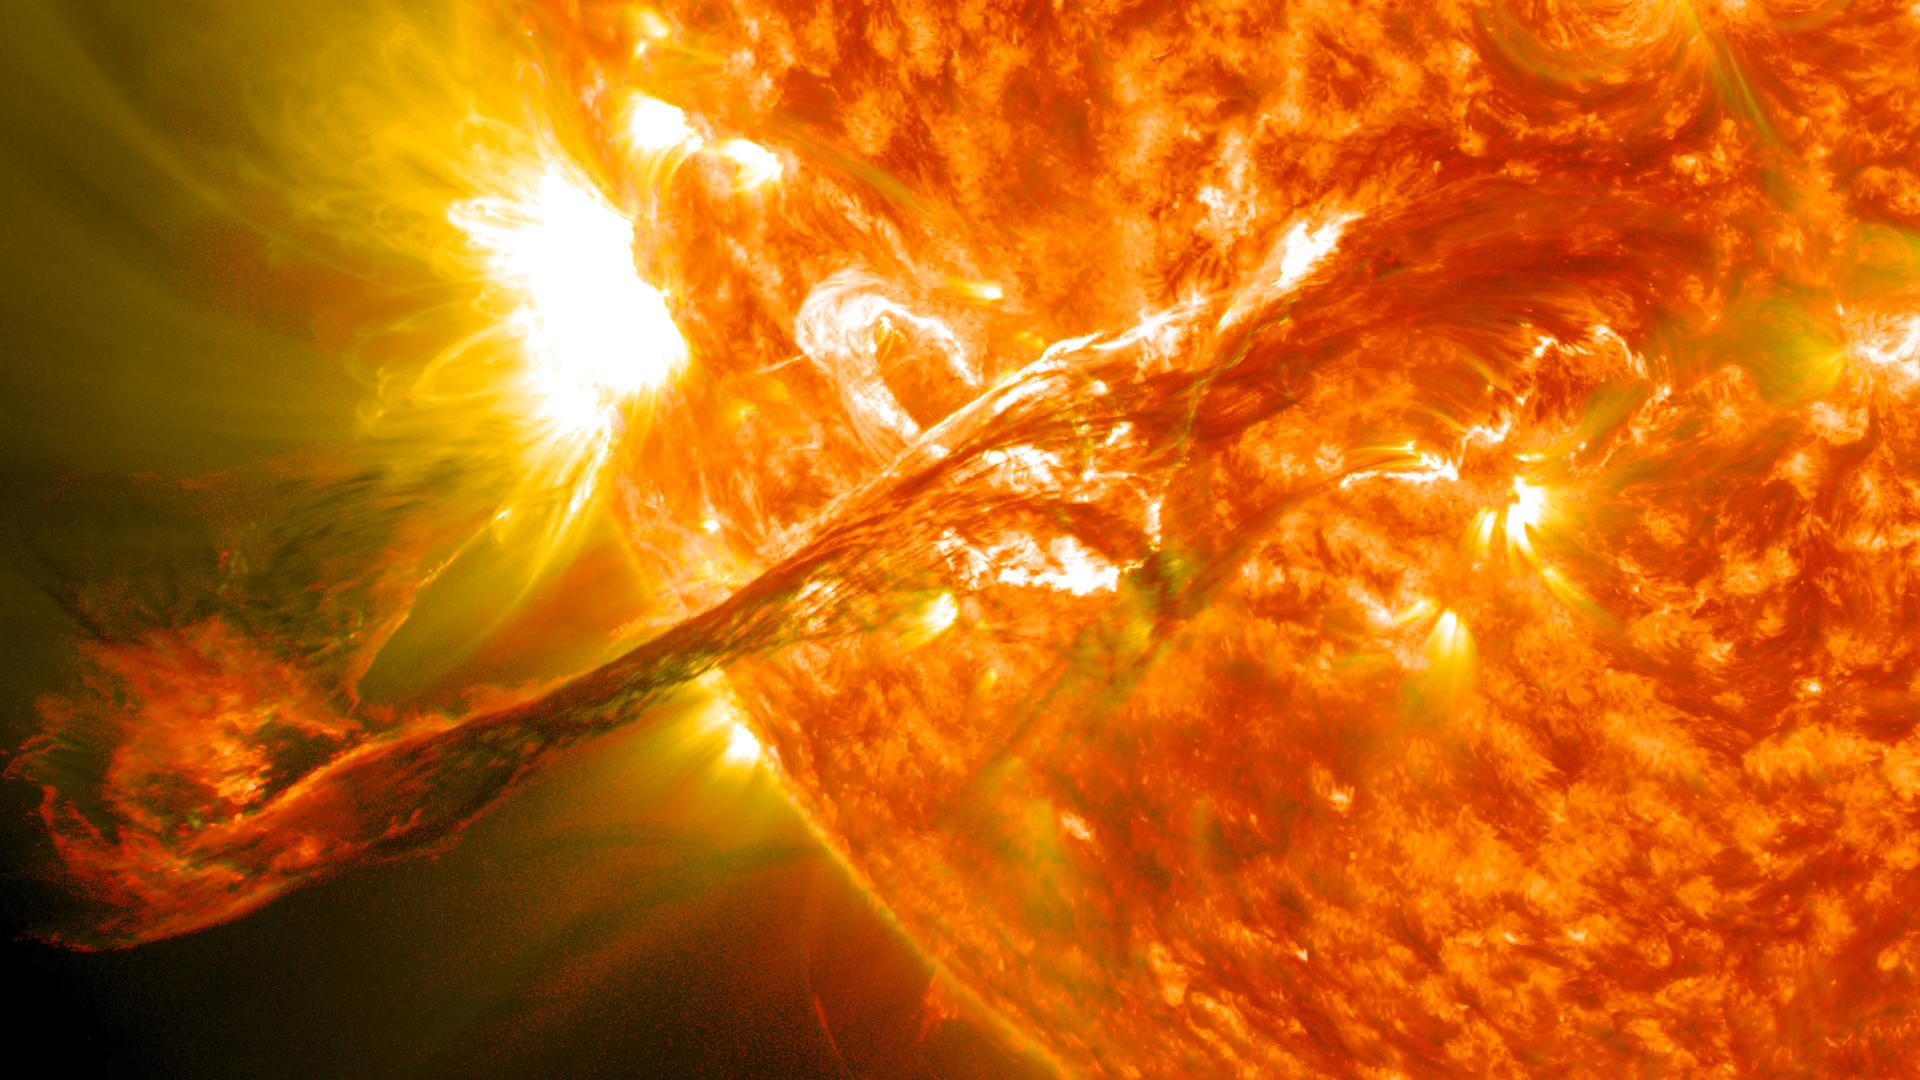 北影 的想法: 太阳耀斑·solar flare 